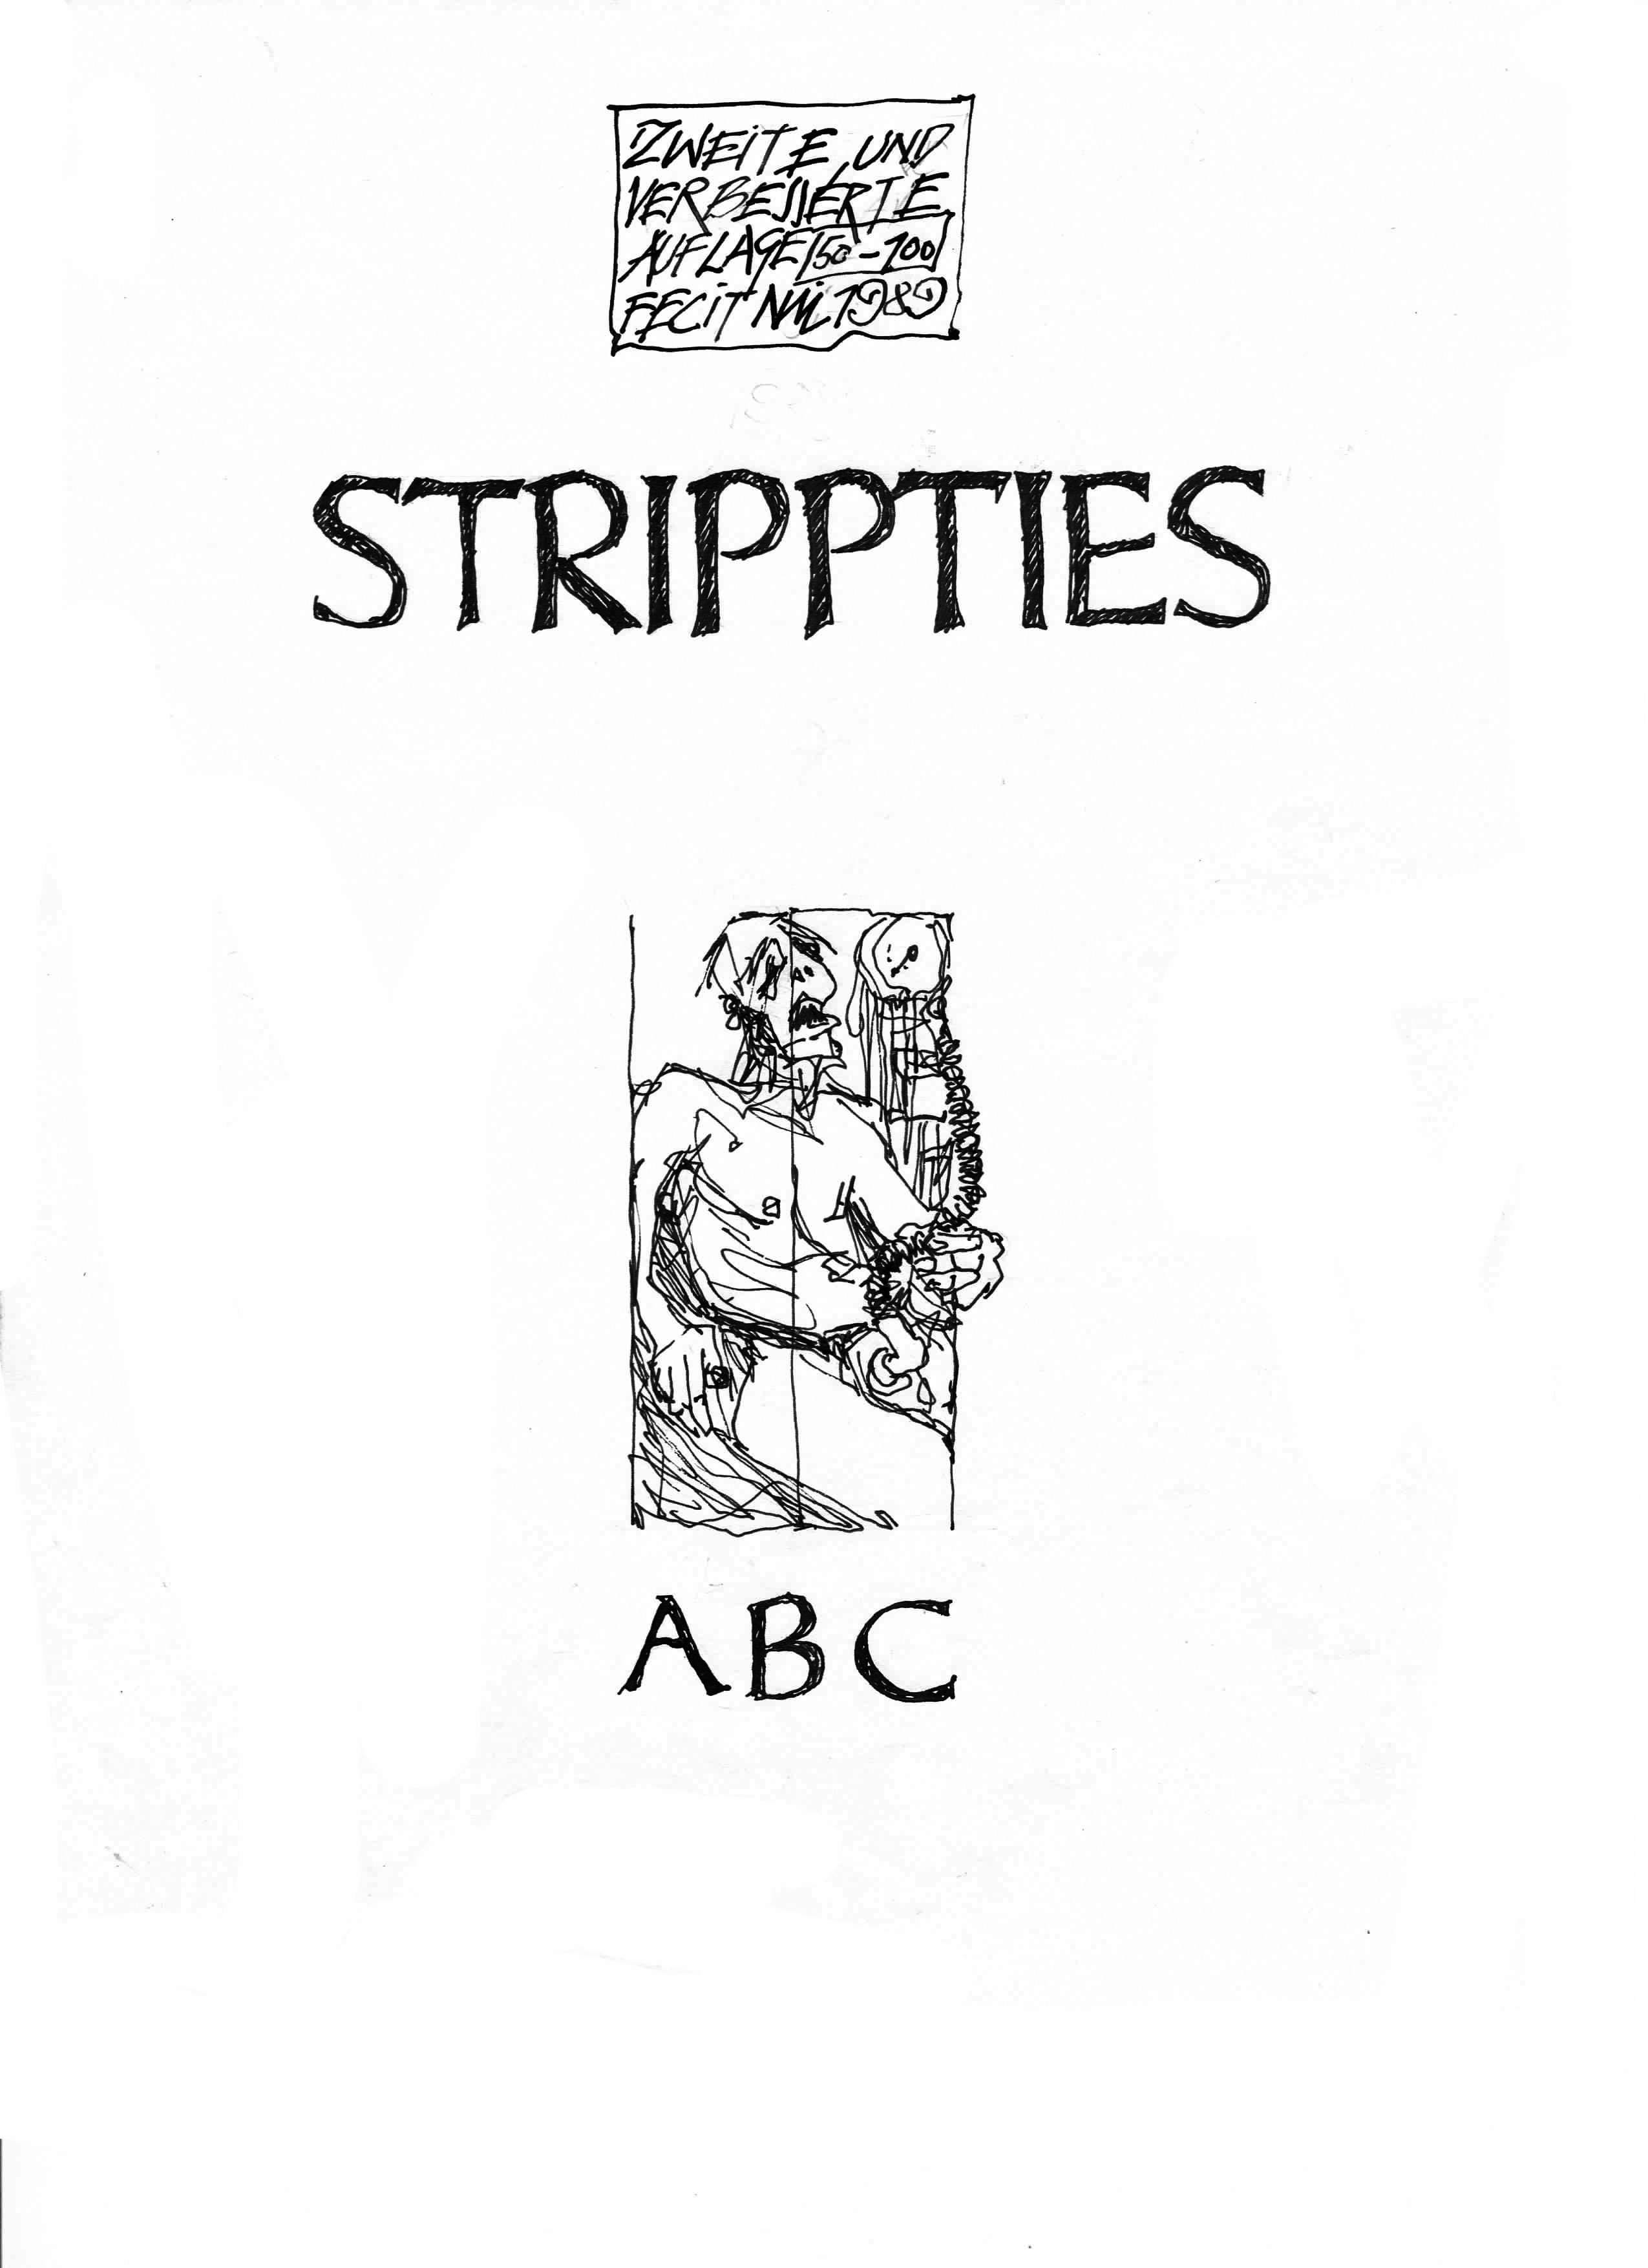 Stripties